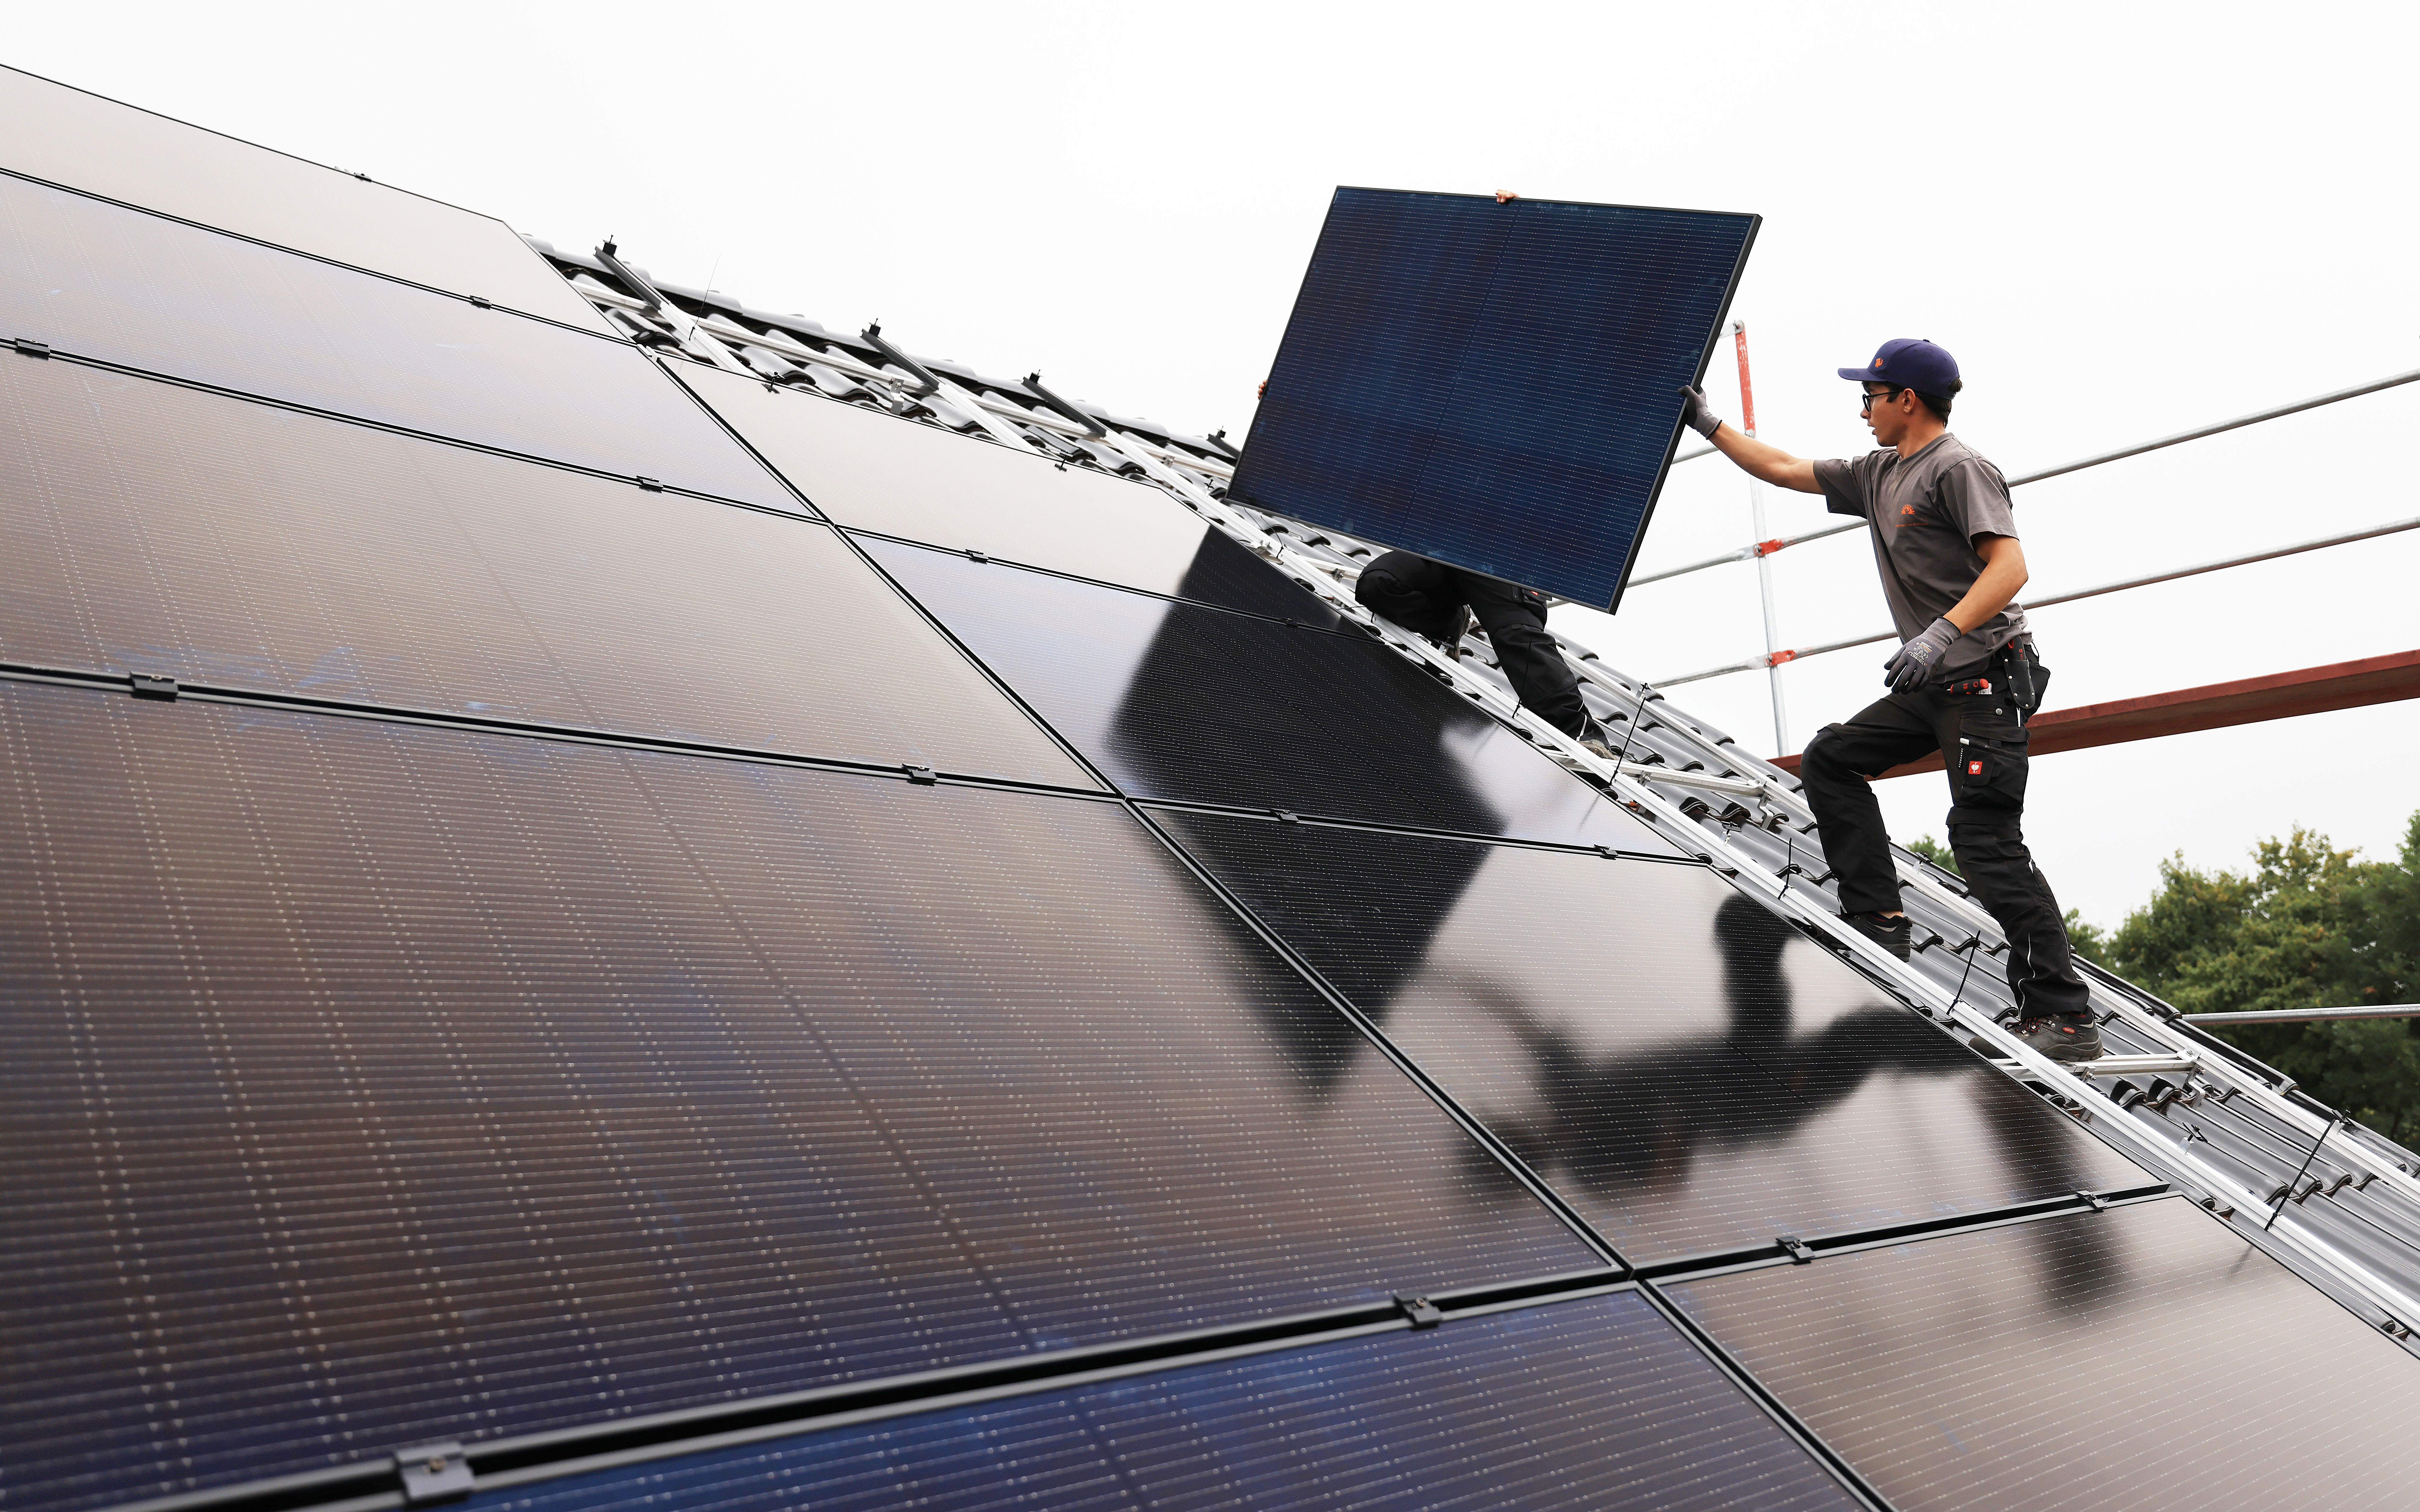 Handwerker montieren auf dem Dach eines Wohnhauses Solarmodule. (Symbolbild)